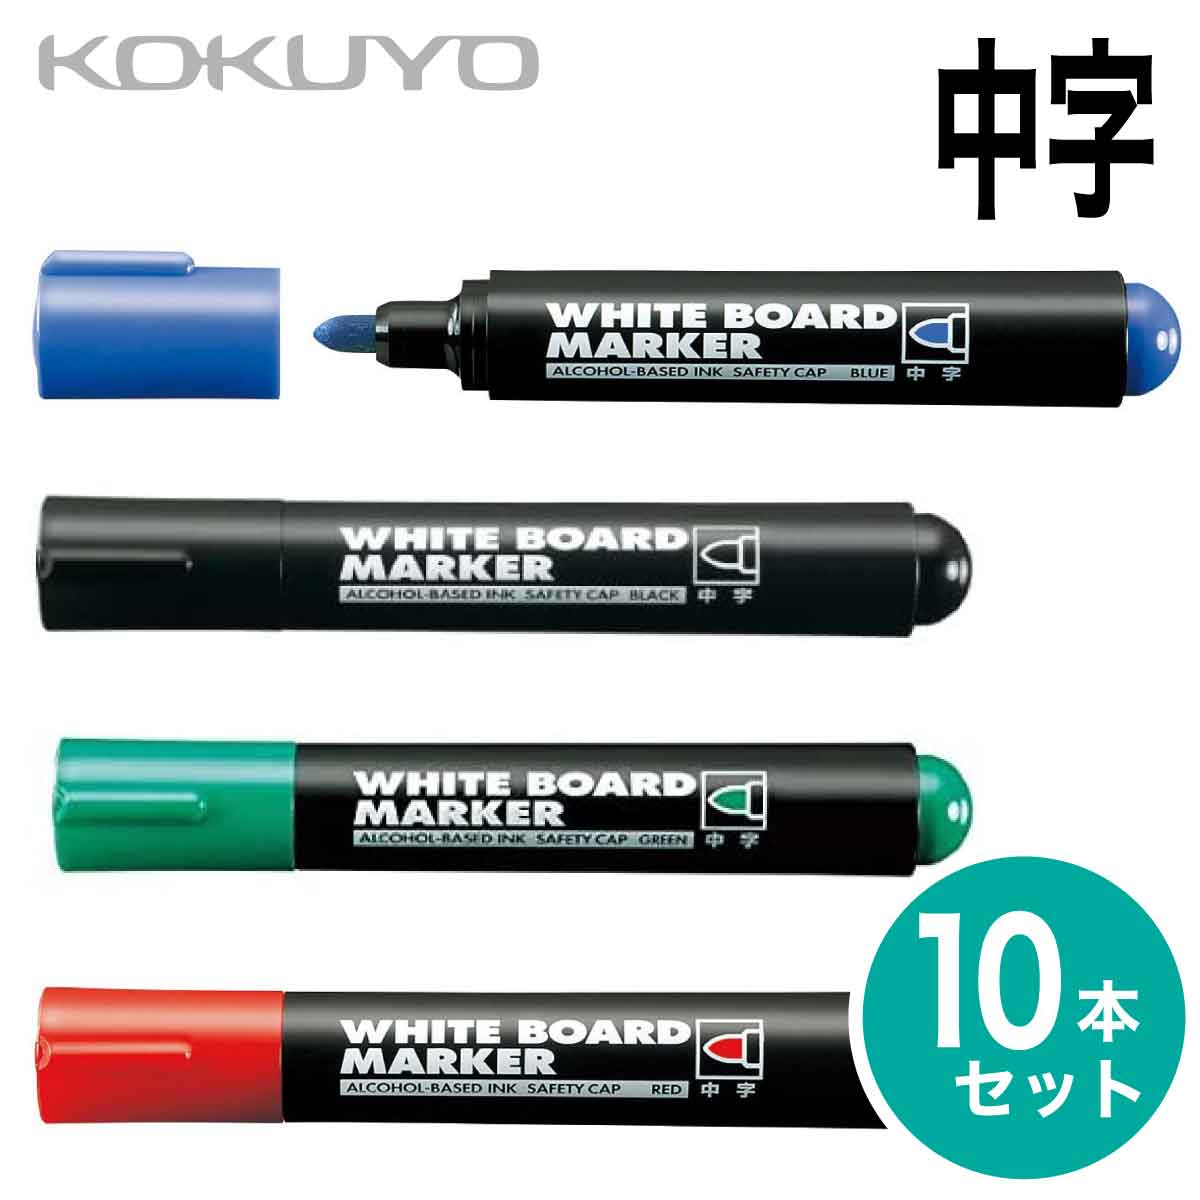 コクヨ 10本セット ホワイトボード マーカー 中字 再生樹脂 黒 赤 青 緑 インク補充式 白板マーカー Whiteboard marker PM-B102